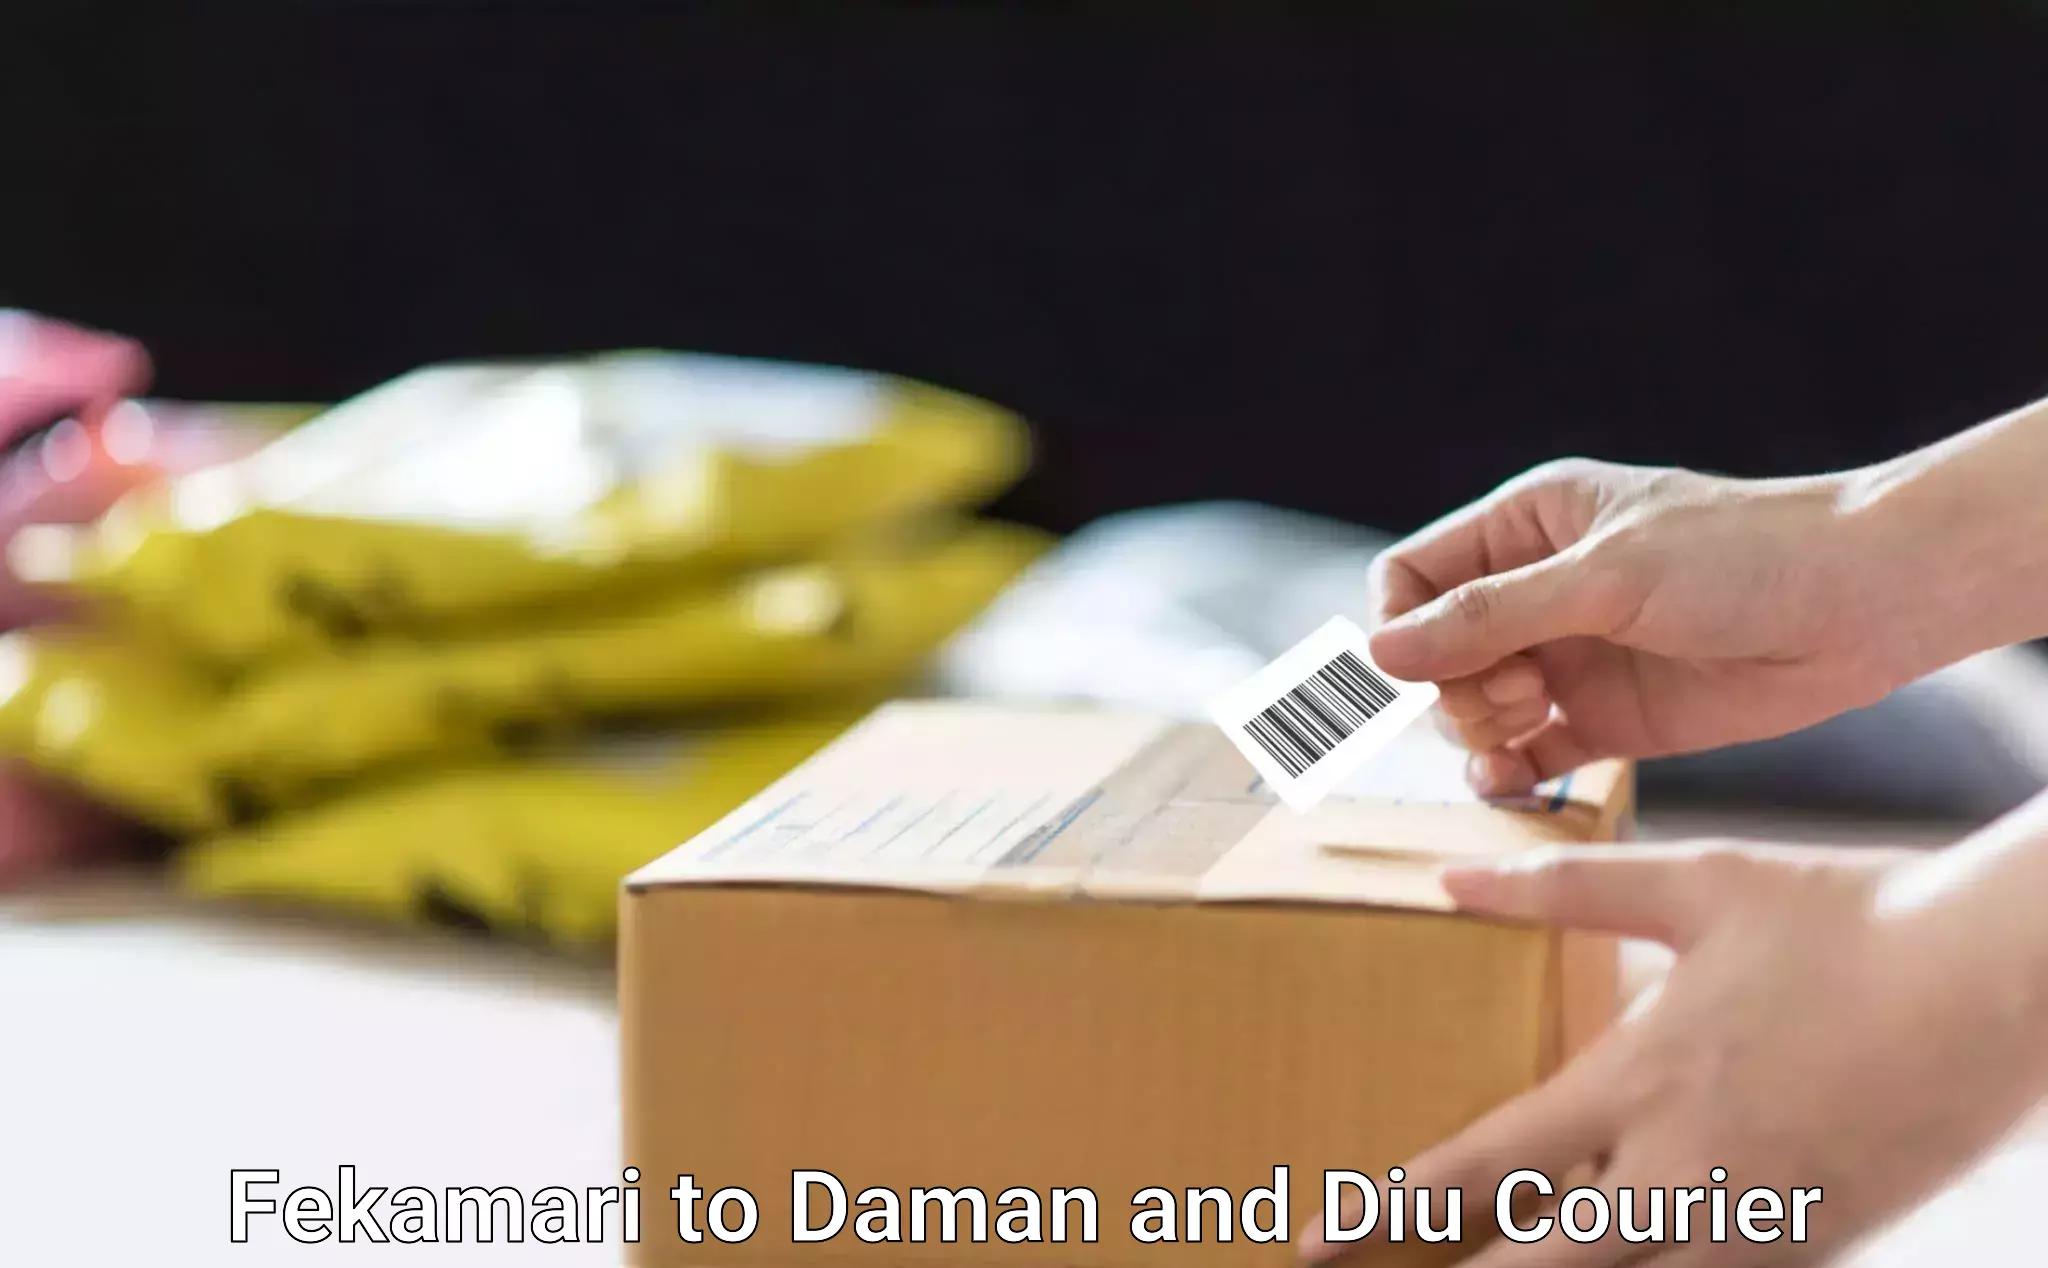 Large package courier Fekamari to Daman